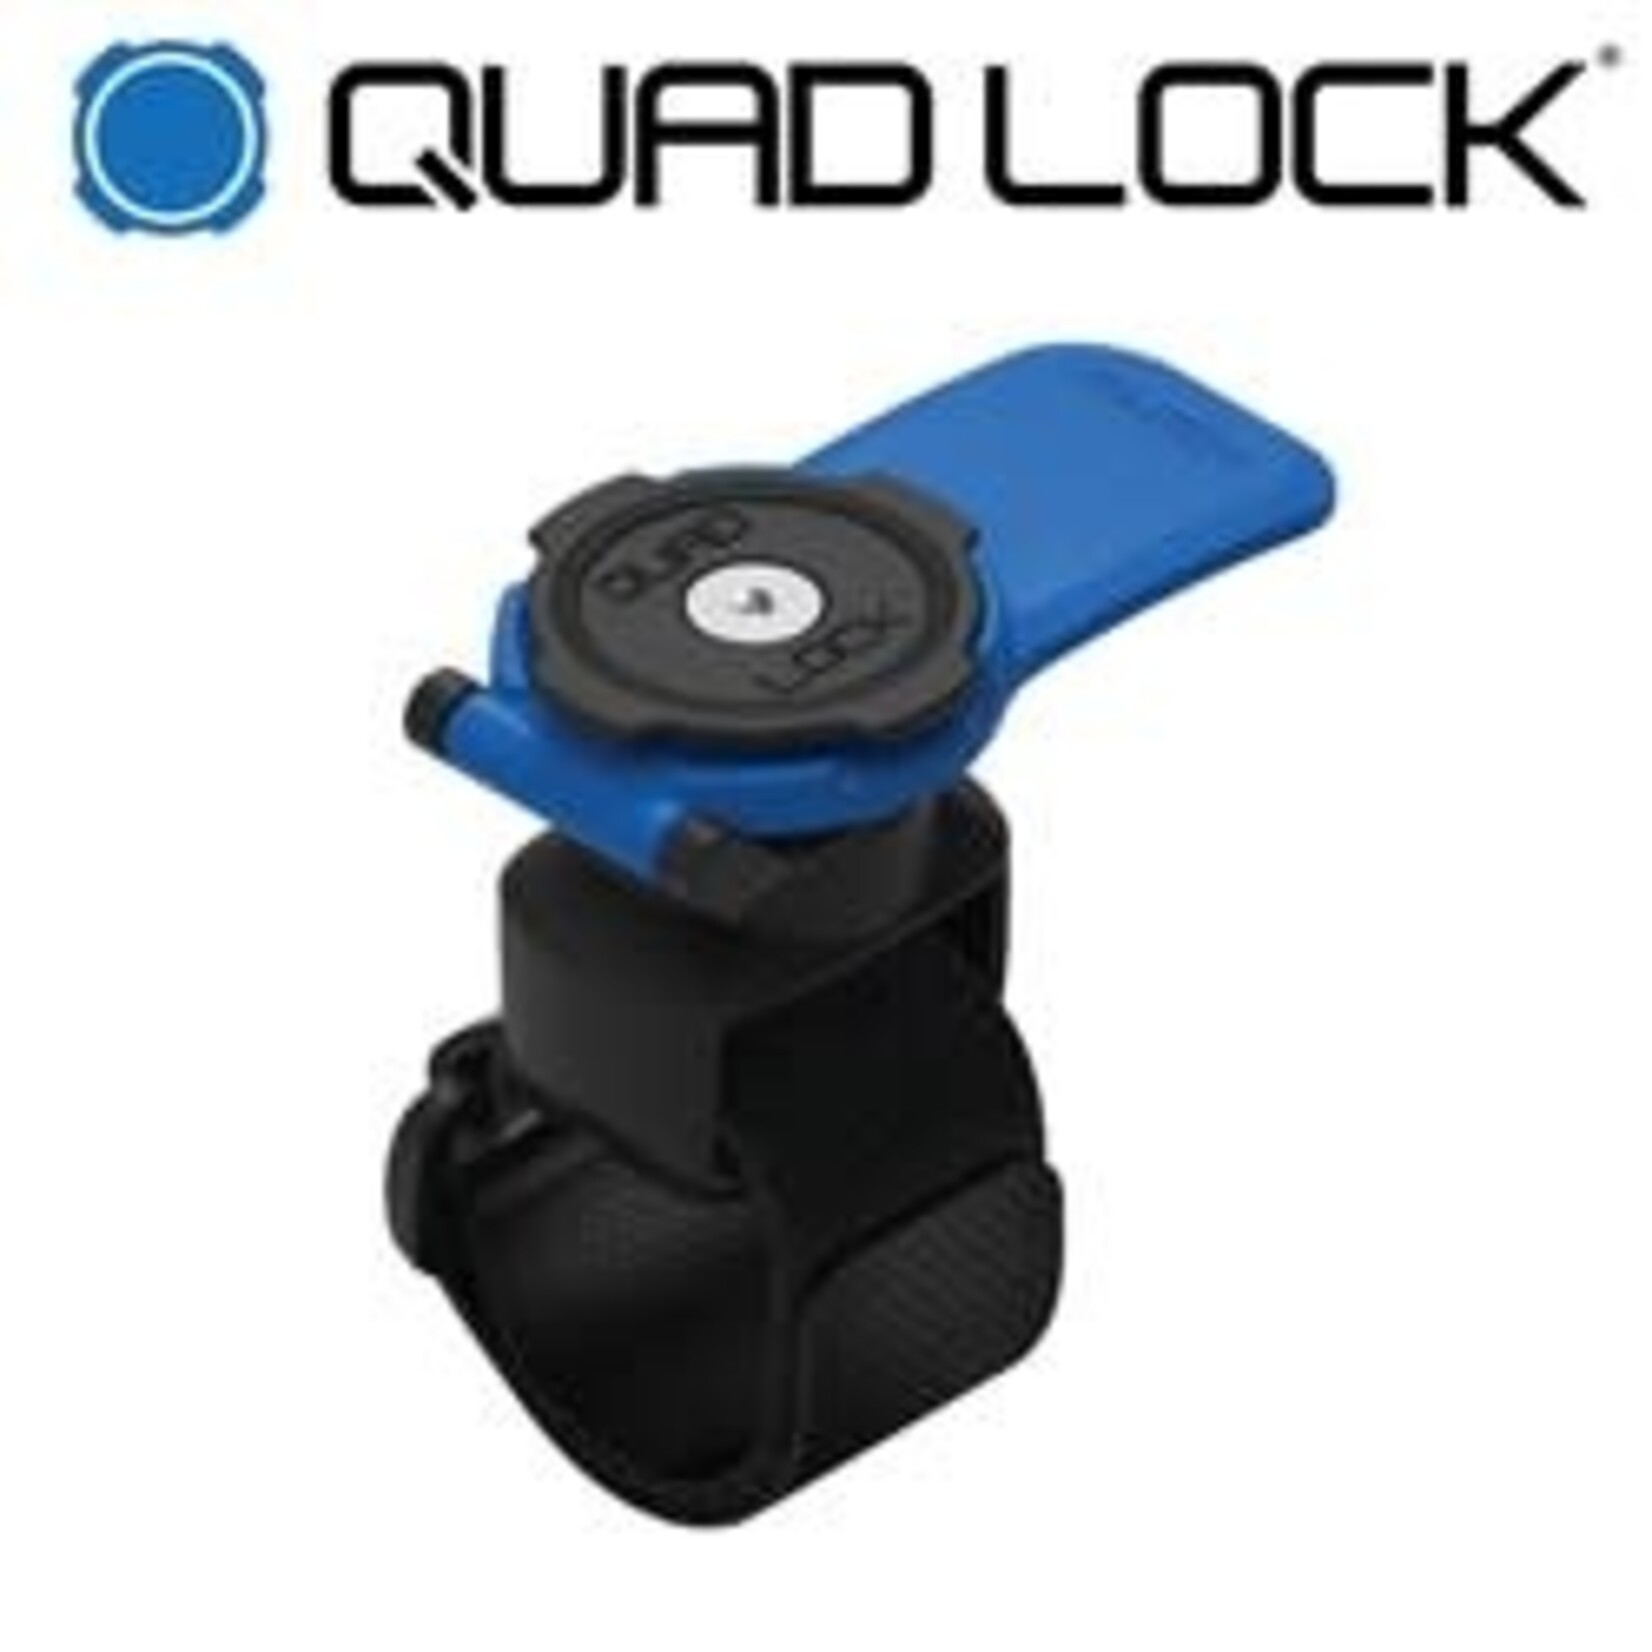 Quad Lock QUADLOCK Phone Mount